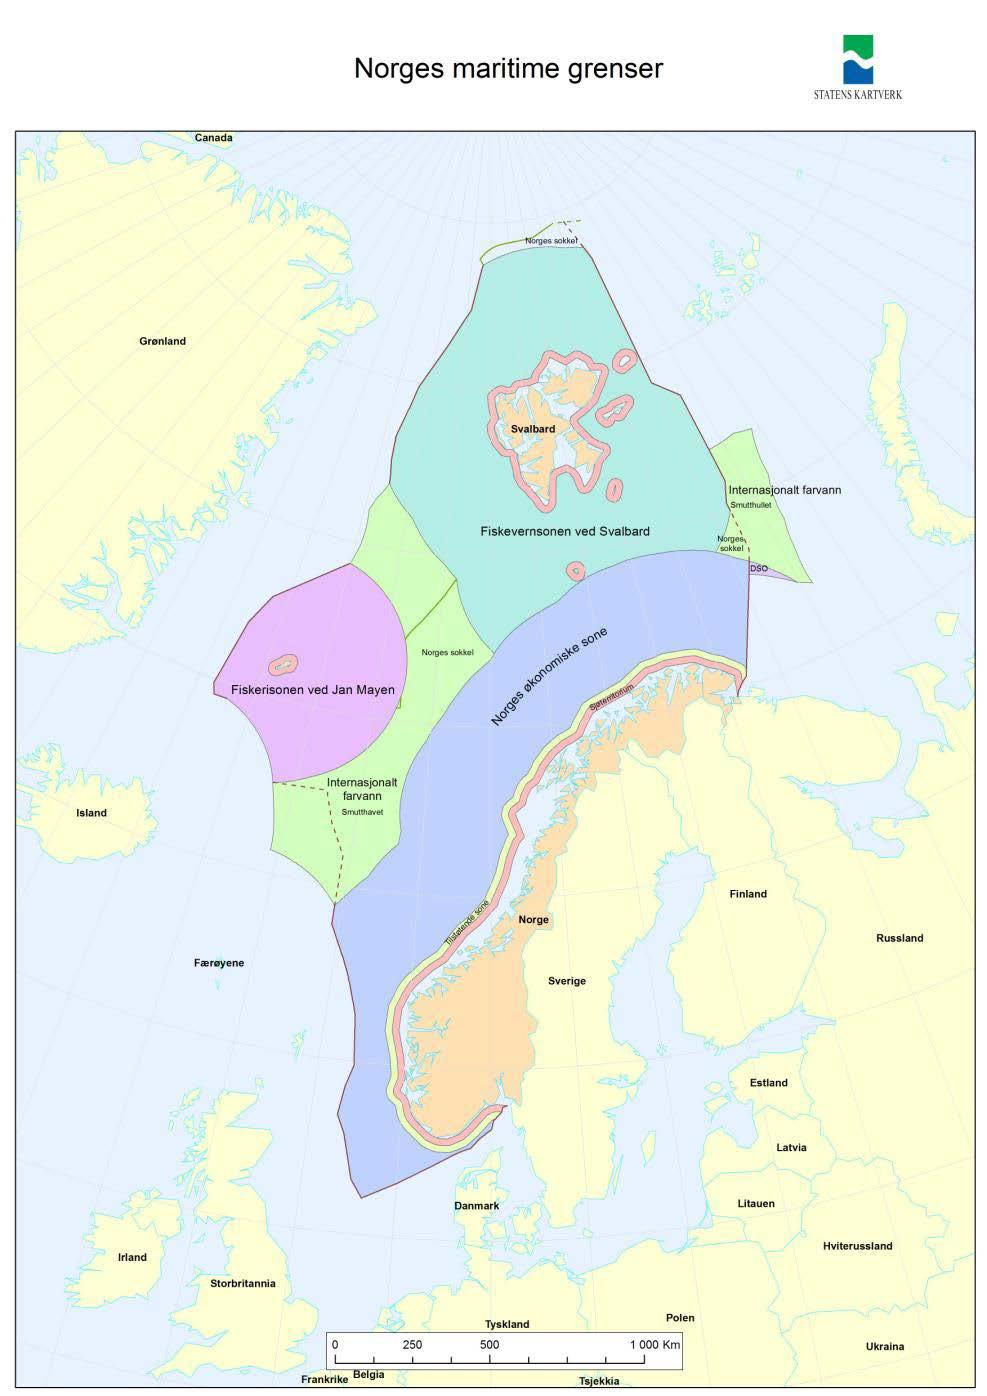 Norge: Folketall: Fastlandet: Svalbard: Jan Mayen: Kystlinje fastlandet: Total kystlinje: (inkludert øyer) Norsk øk.